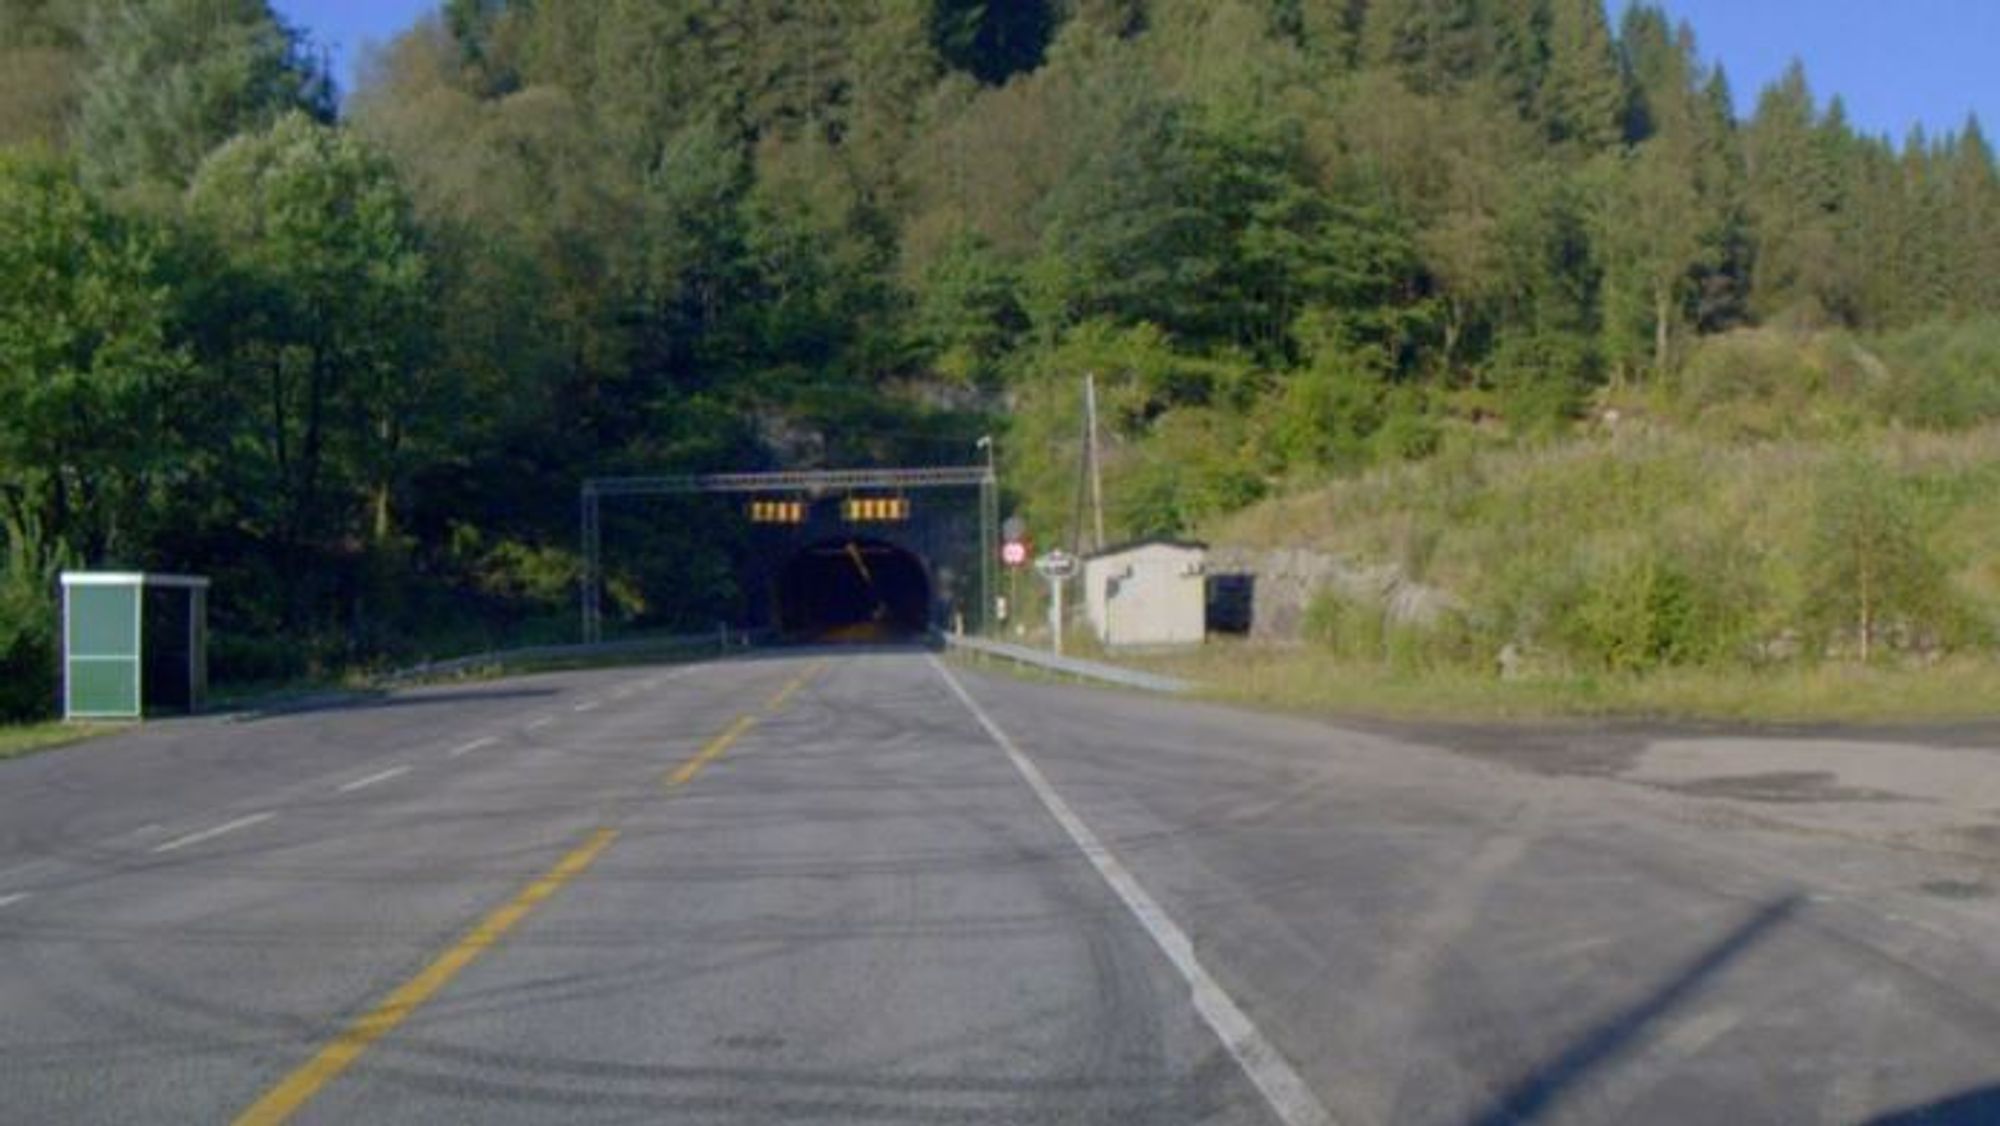 Lerviktunnelen er ikke lenger enn 776 meter.